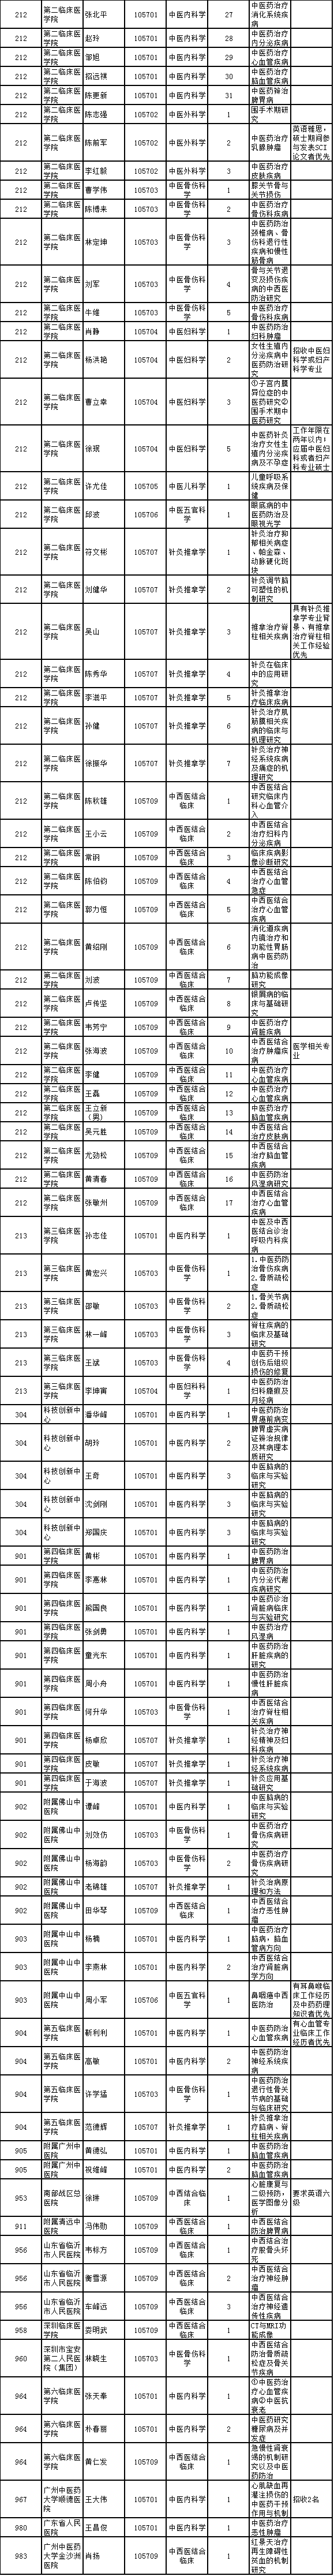 广州中医药大学2020年博士研究生招生专业目录(同等学力)